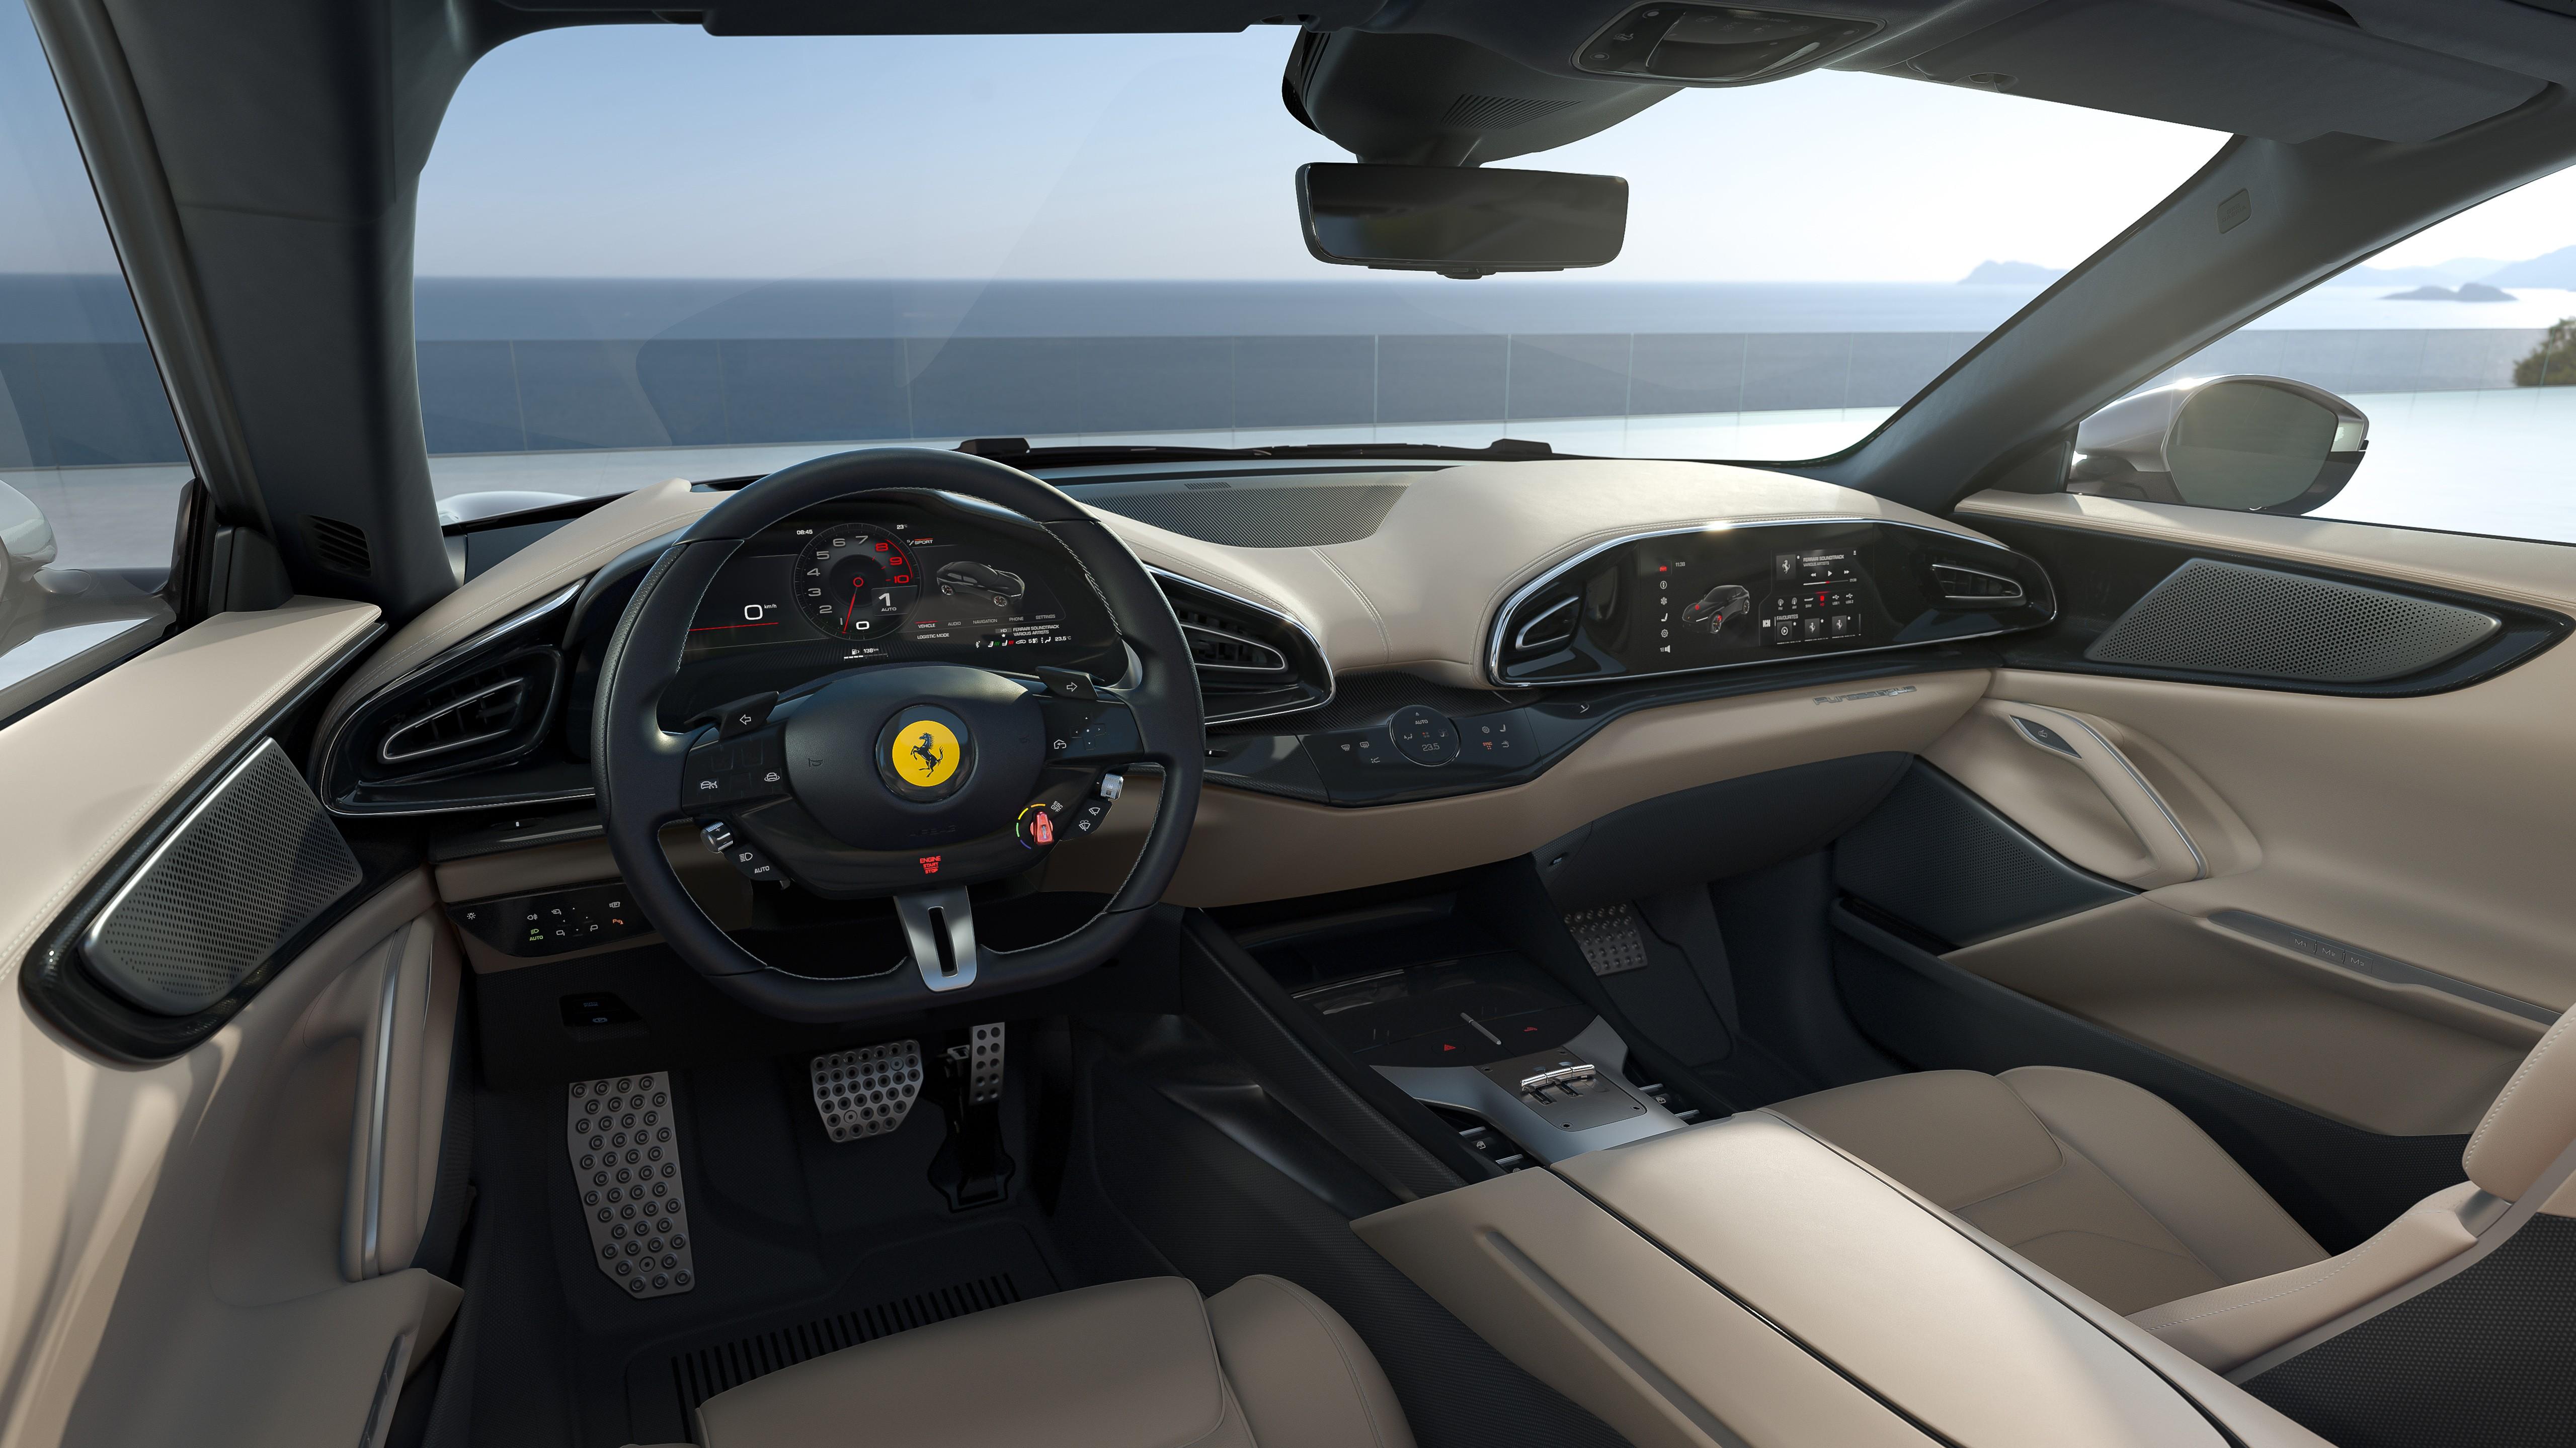 Ferrari Purosangue 2022 Interior 5K Wallpaper   HD Car Wallpapers